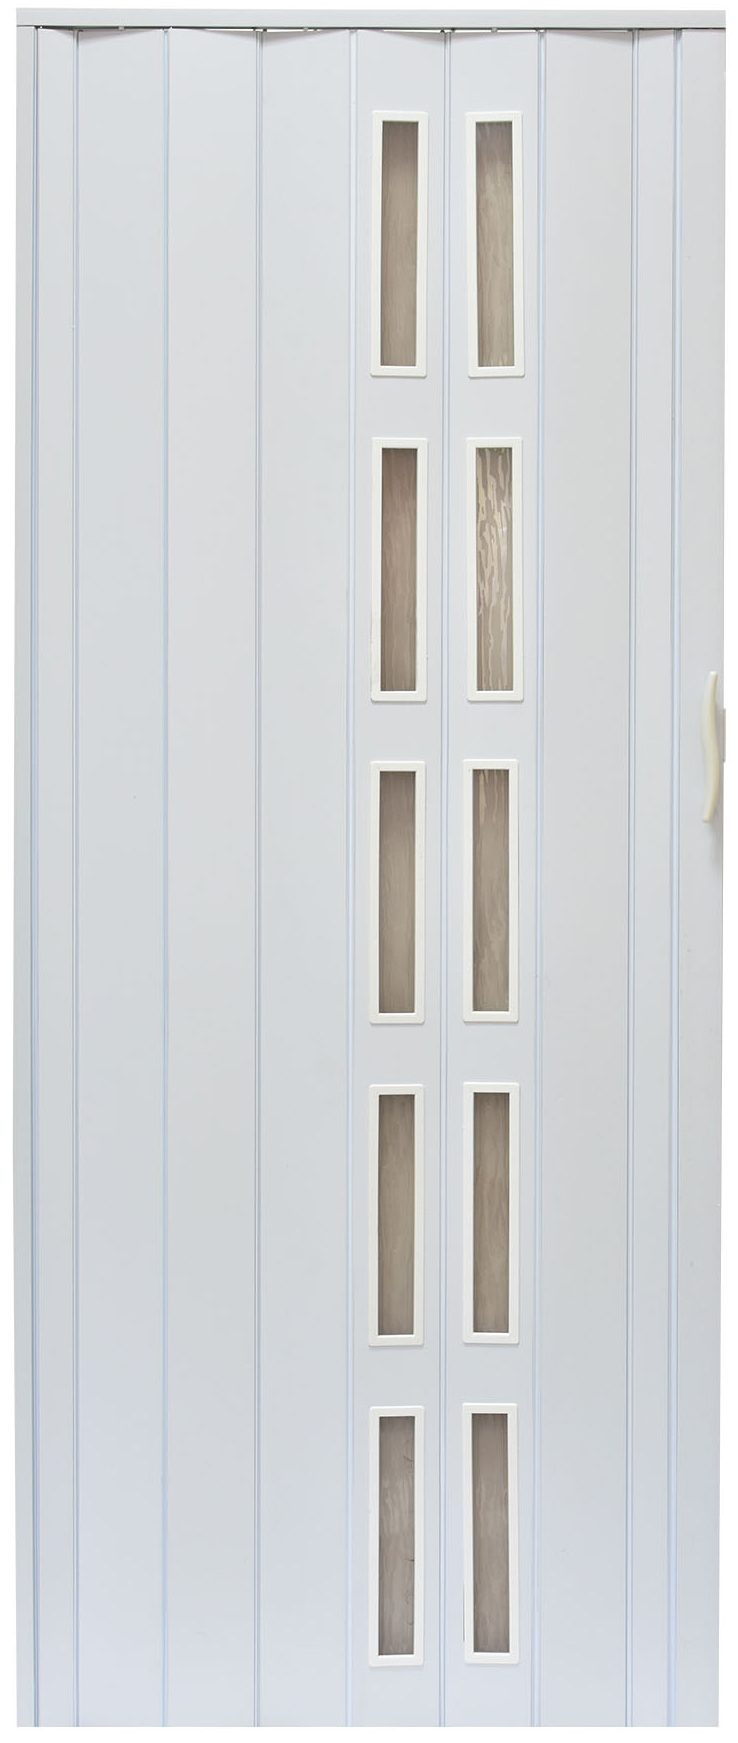 Drzwi harmonijkowe 005S - 80 cm - 014 biały mat